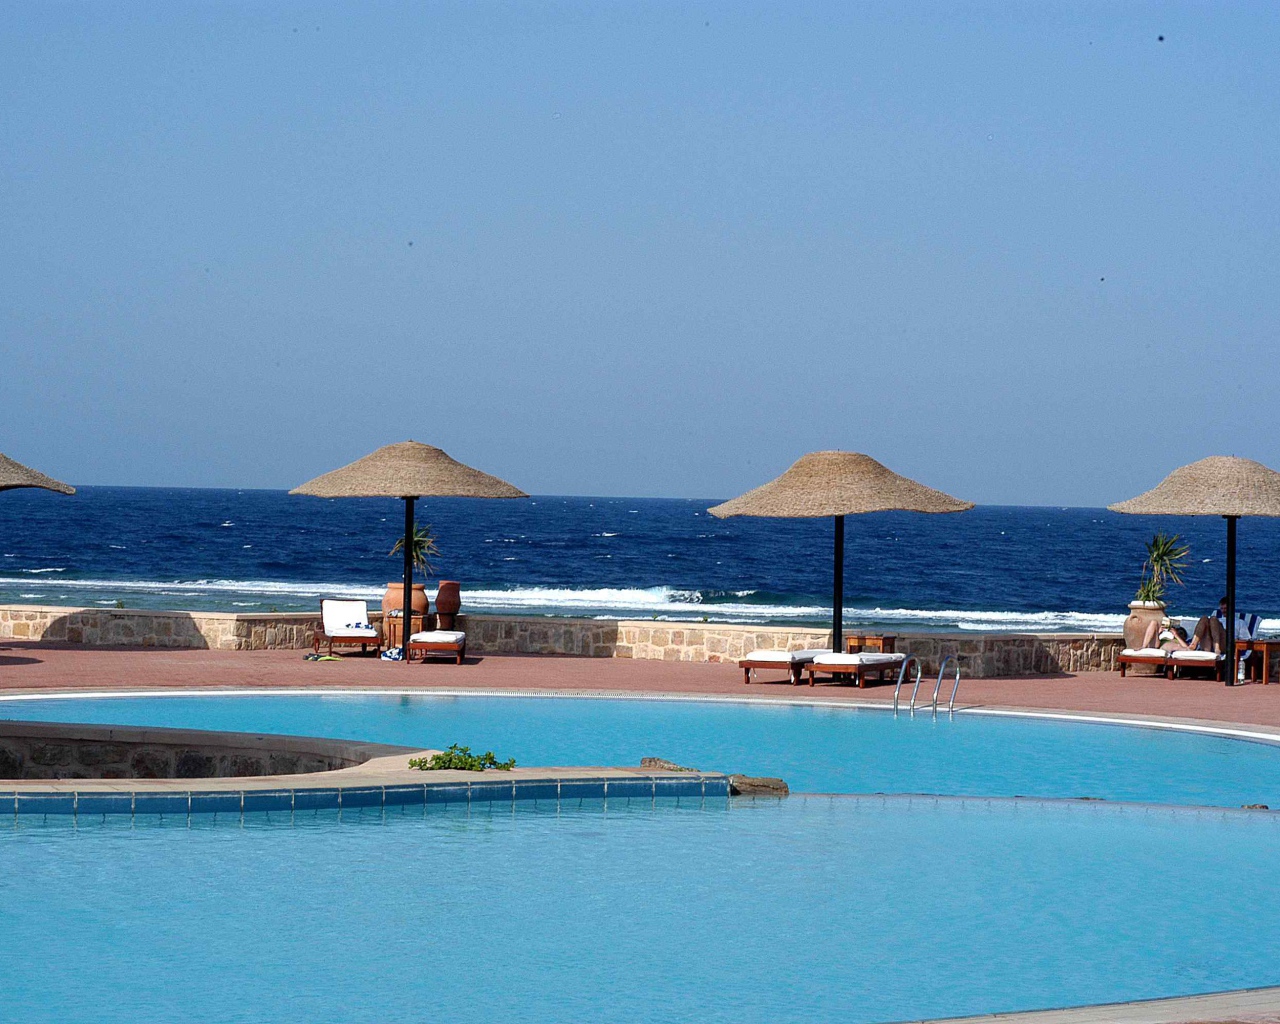 Бассейн в отеле на курорте Эль Кусейр, Египет